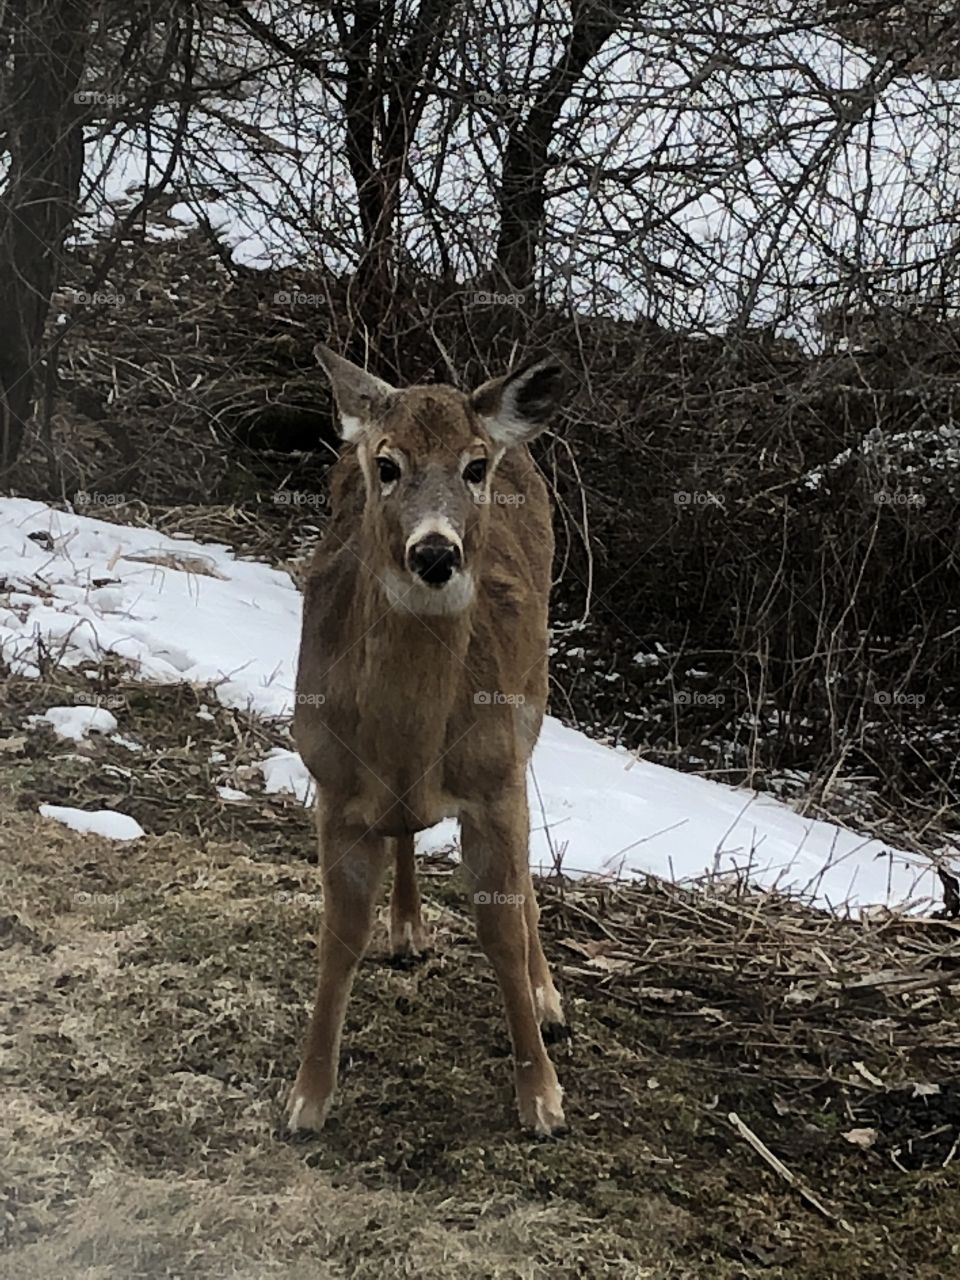 Deer has eyes on me